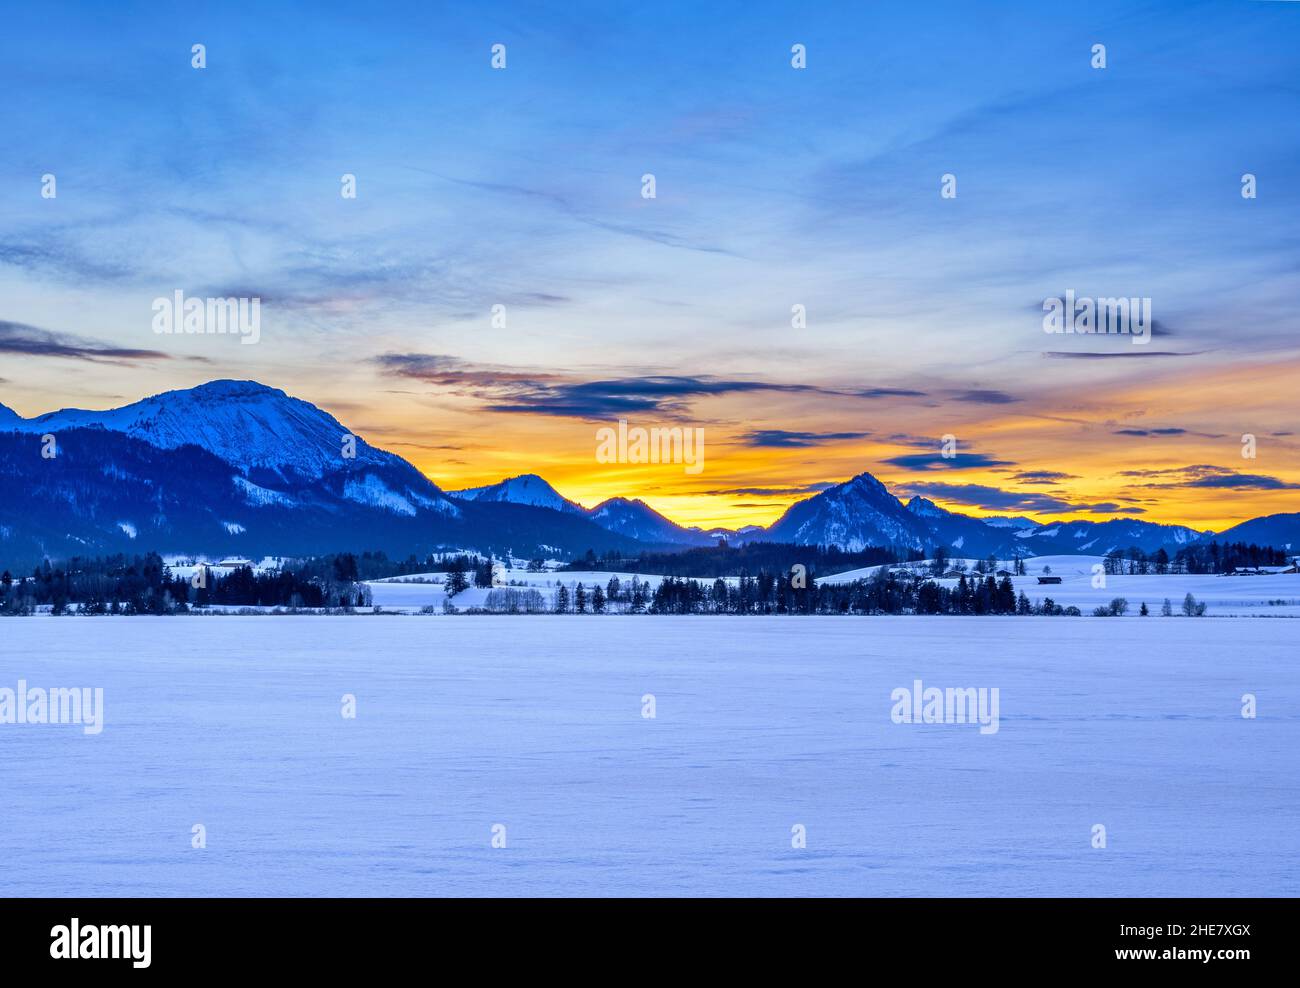 Hopfensee en invierno, Allgau, Swabia, Alemania Foto de stock